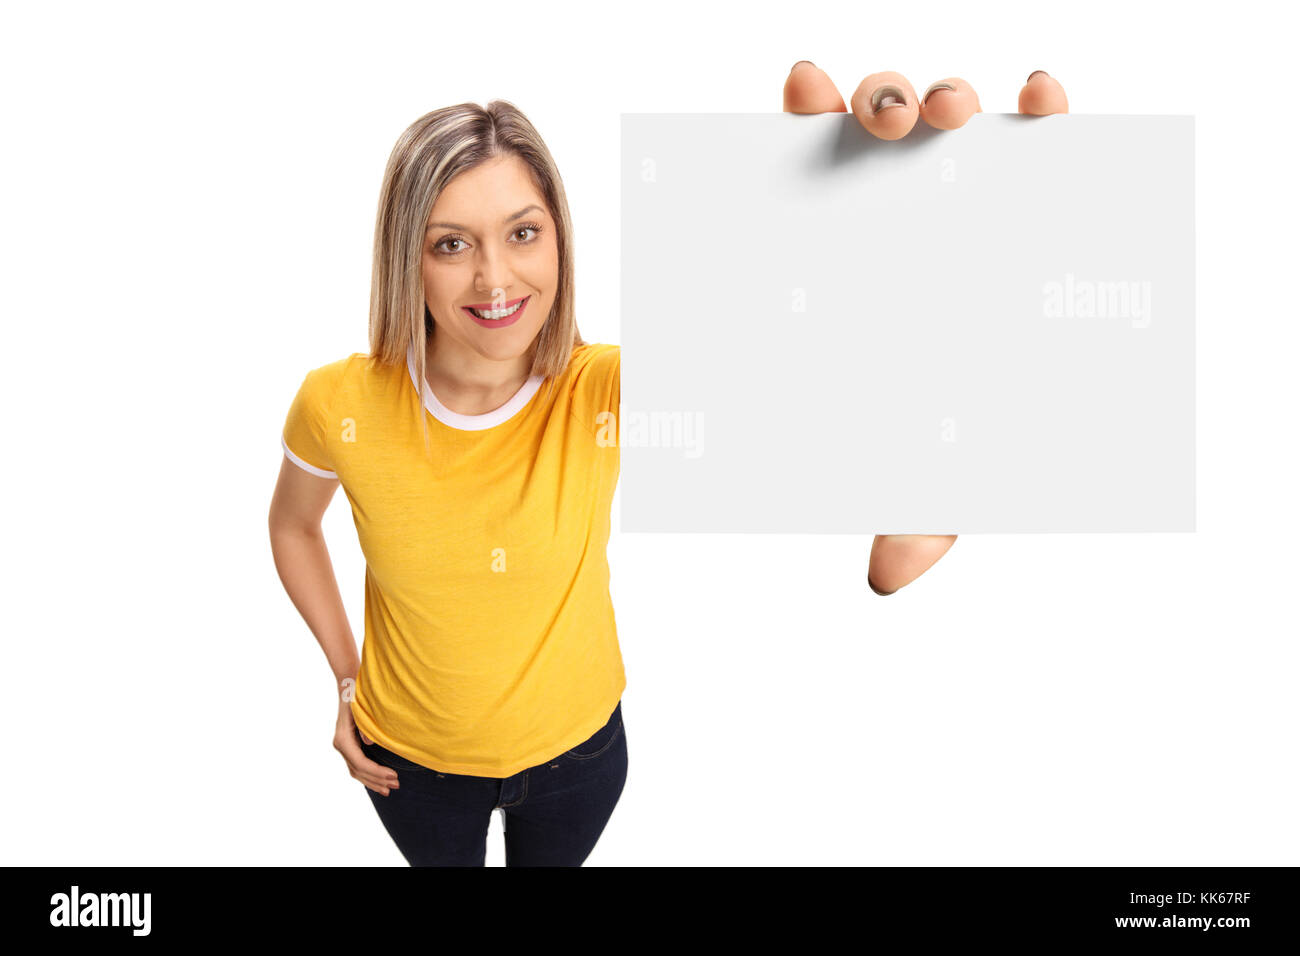 La donna che mostra una scheda vuota isolata su sfondo bianco Foto Stock